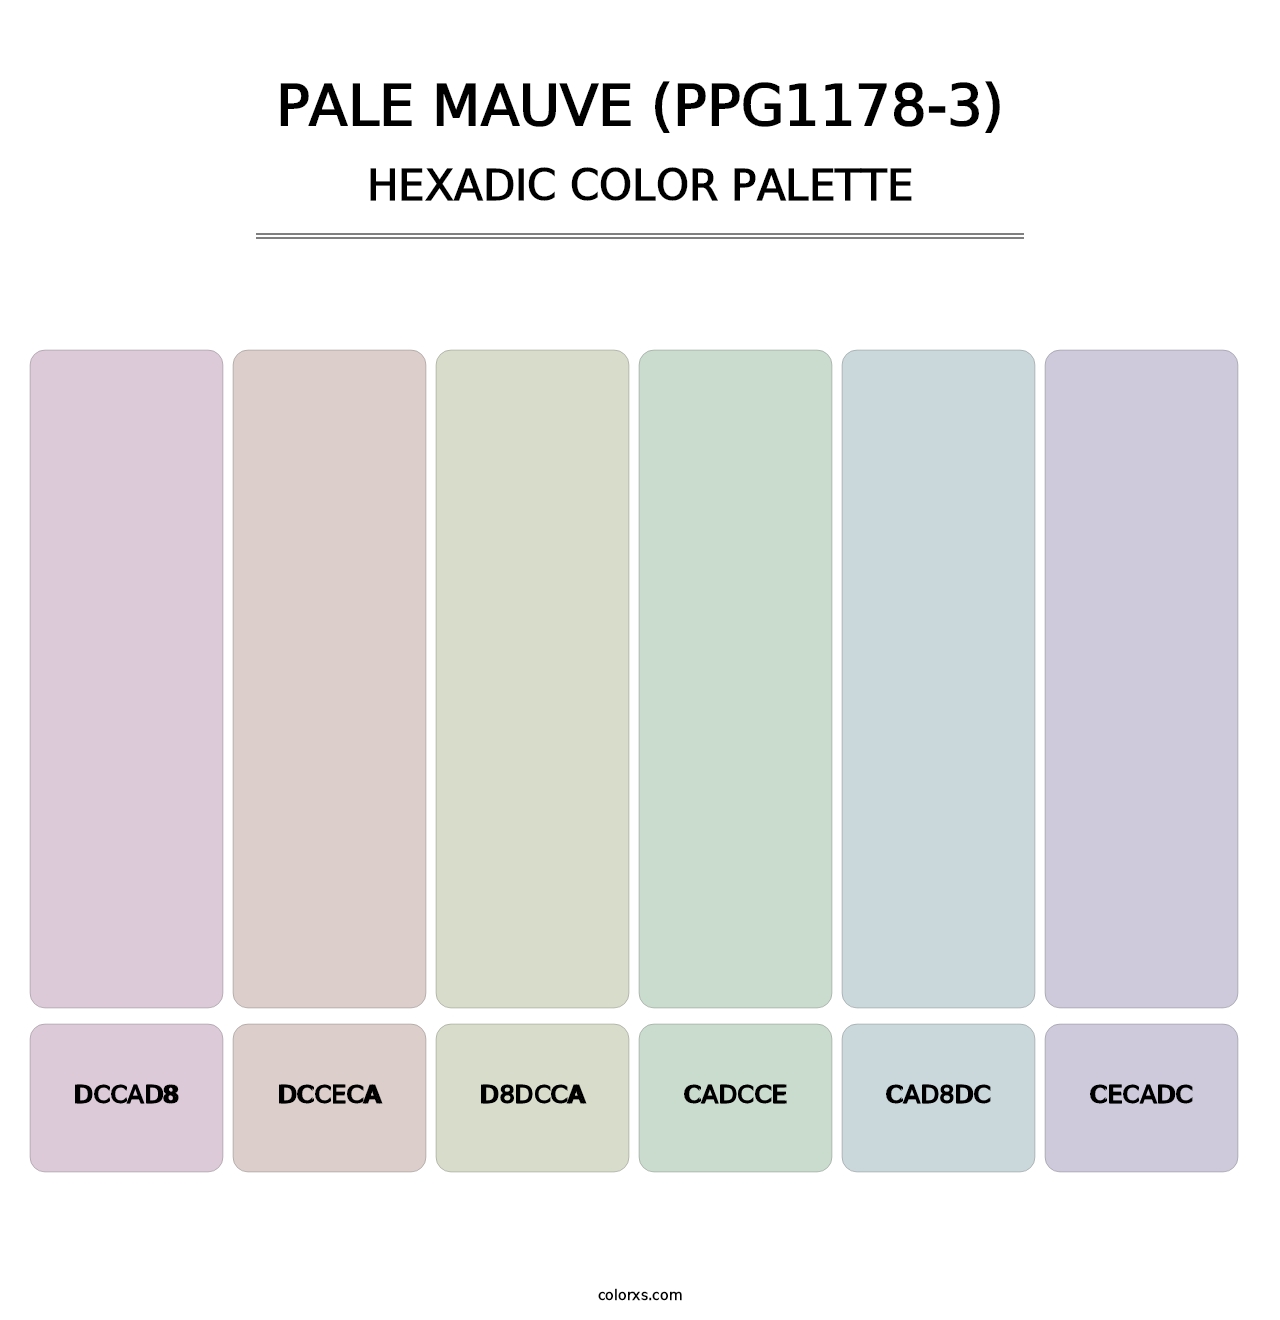 Pale Mauve (PPG1178-3) - Hexadic Color Palette